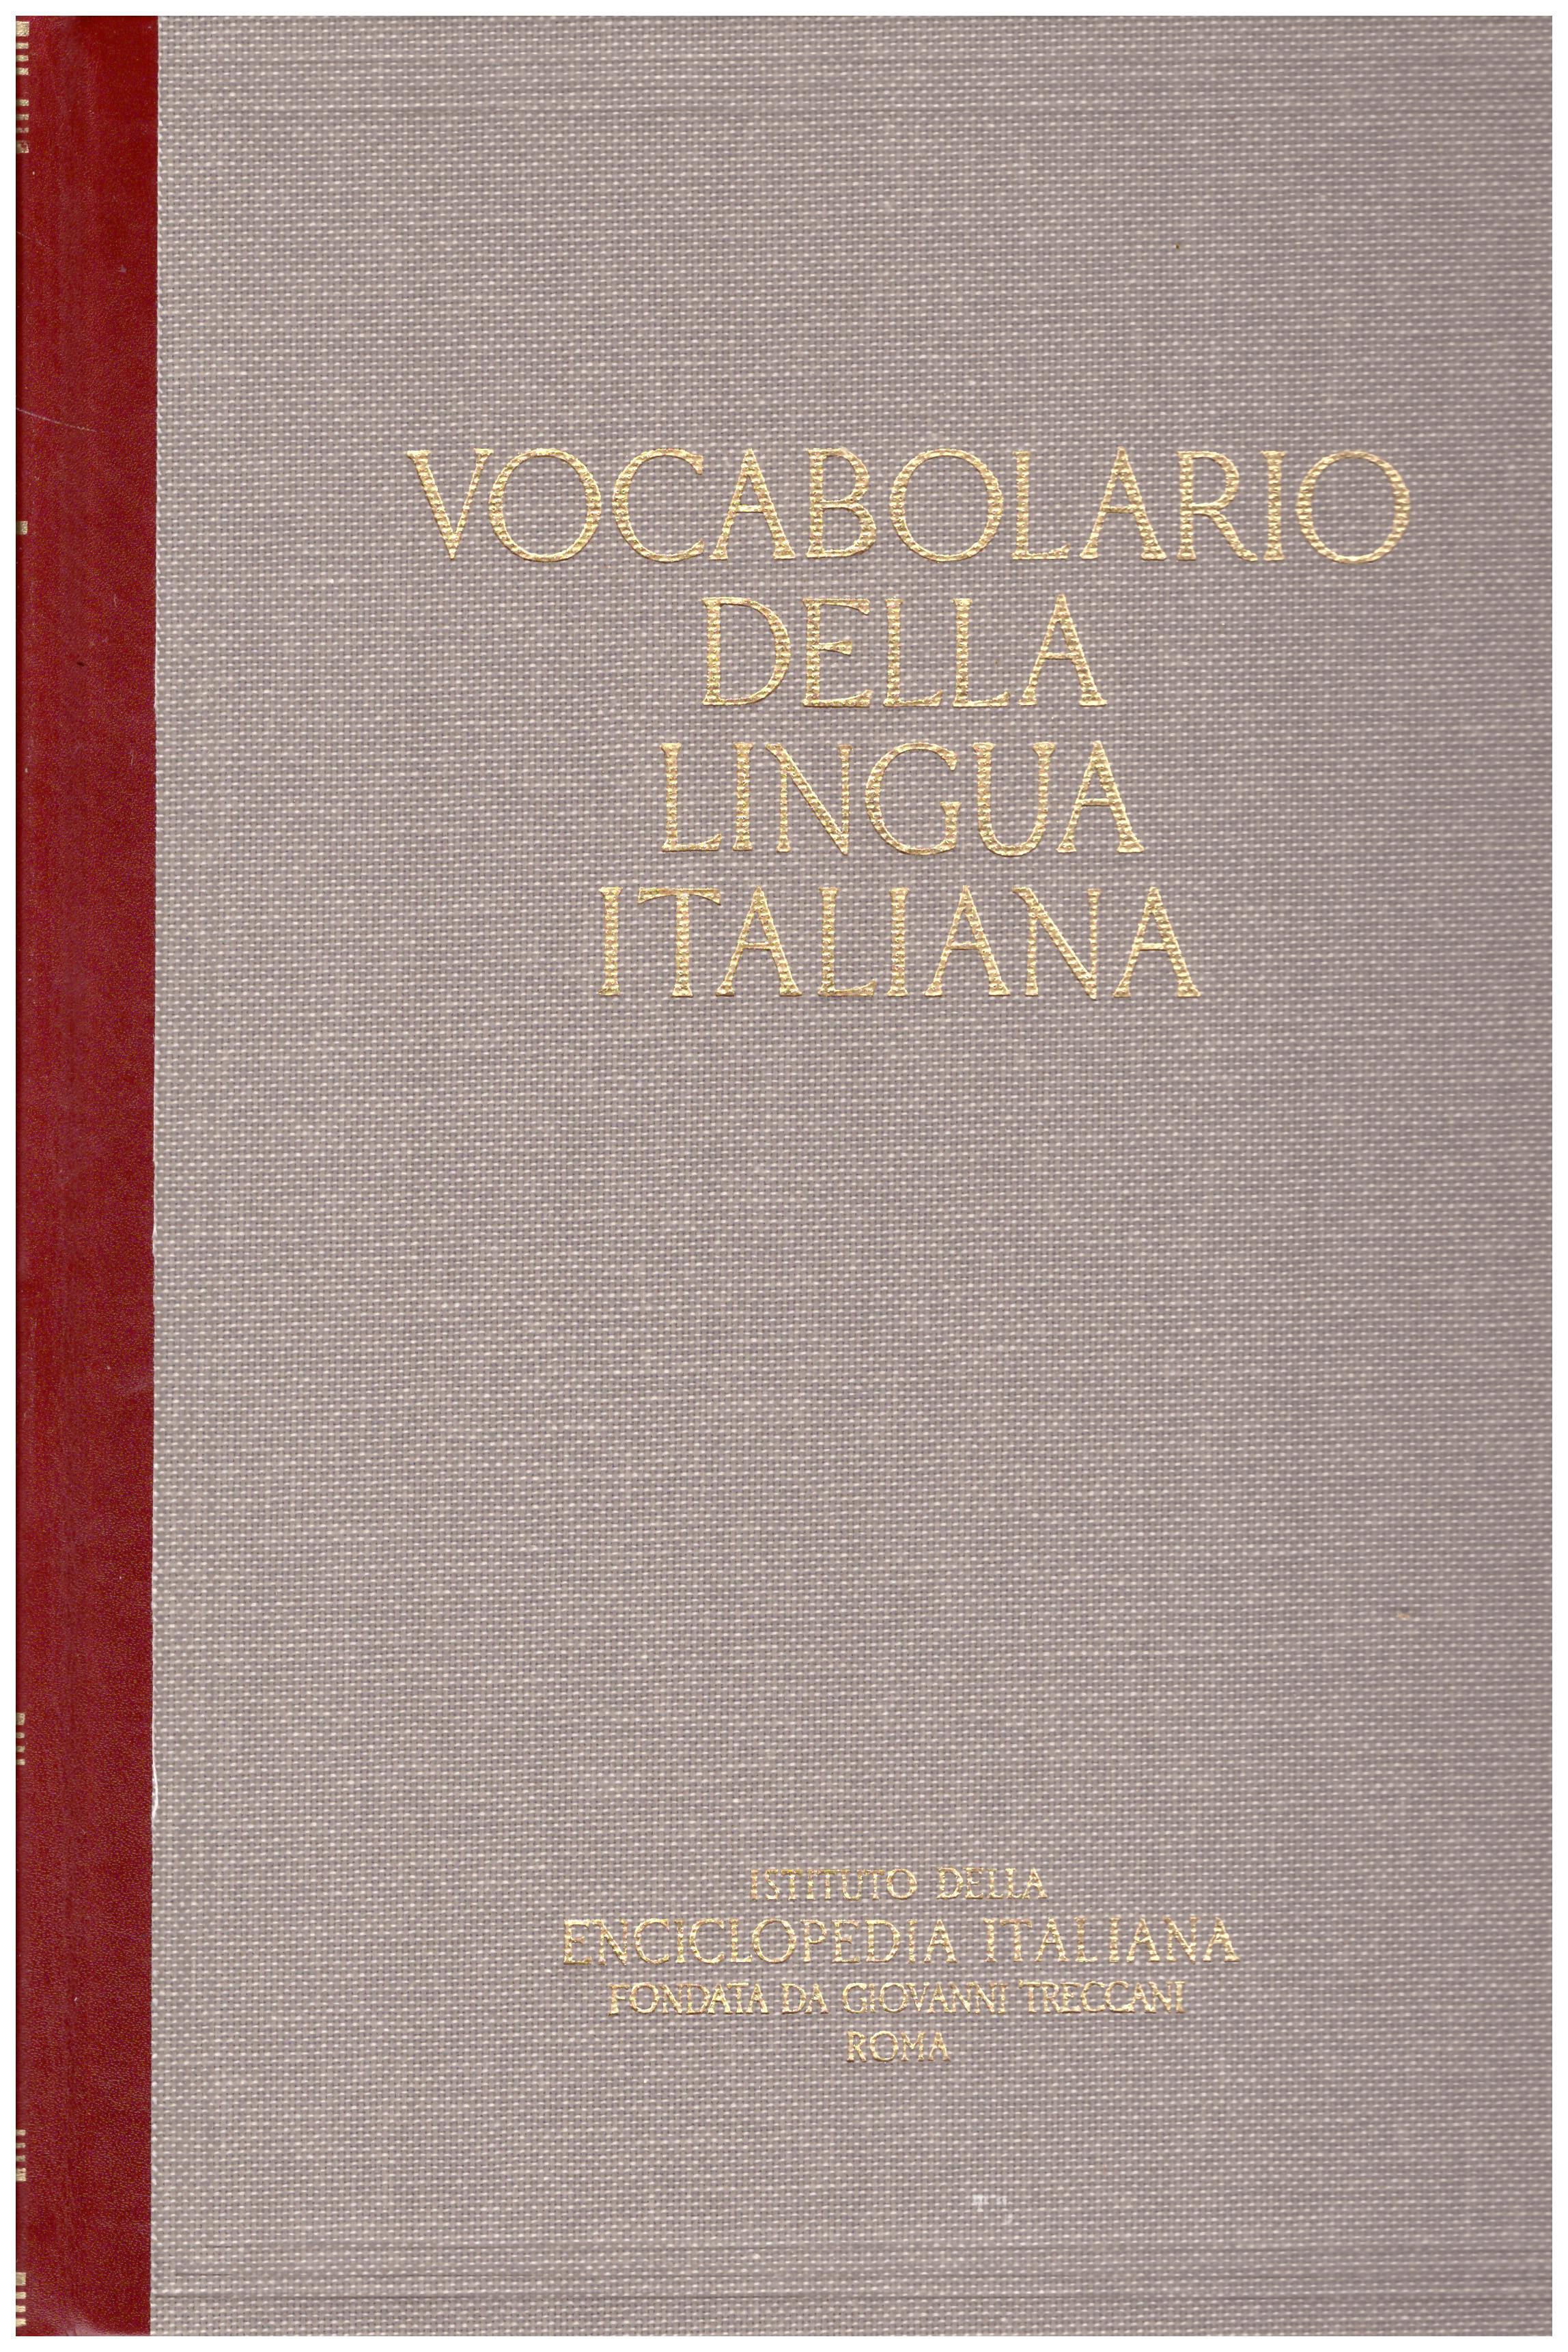 Titolo: Vocabolario della lingua italiana Vol II D-L Autore: AA.VV.  Editore: Istituto della enciclopedia italiana,Milano, presso Arti Grafiche Ricordi, 1986